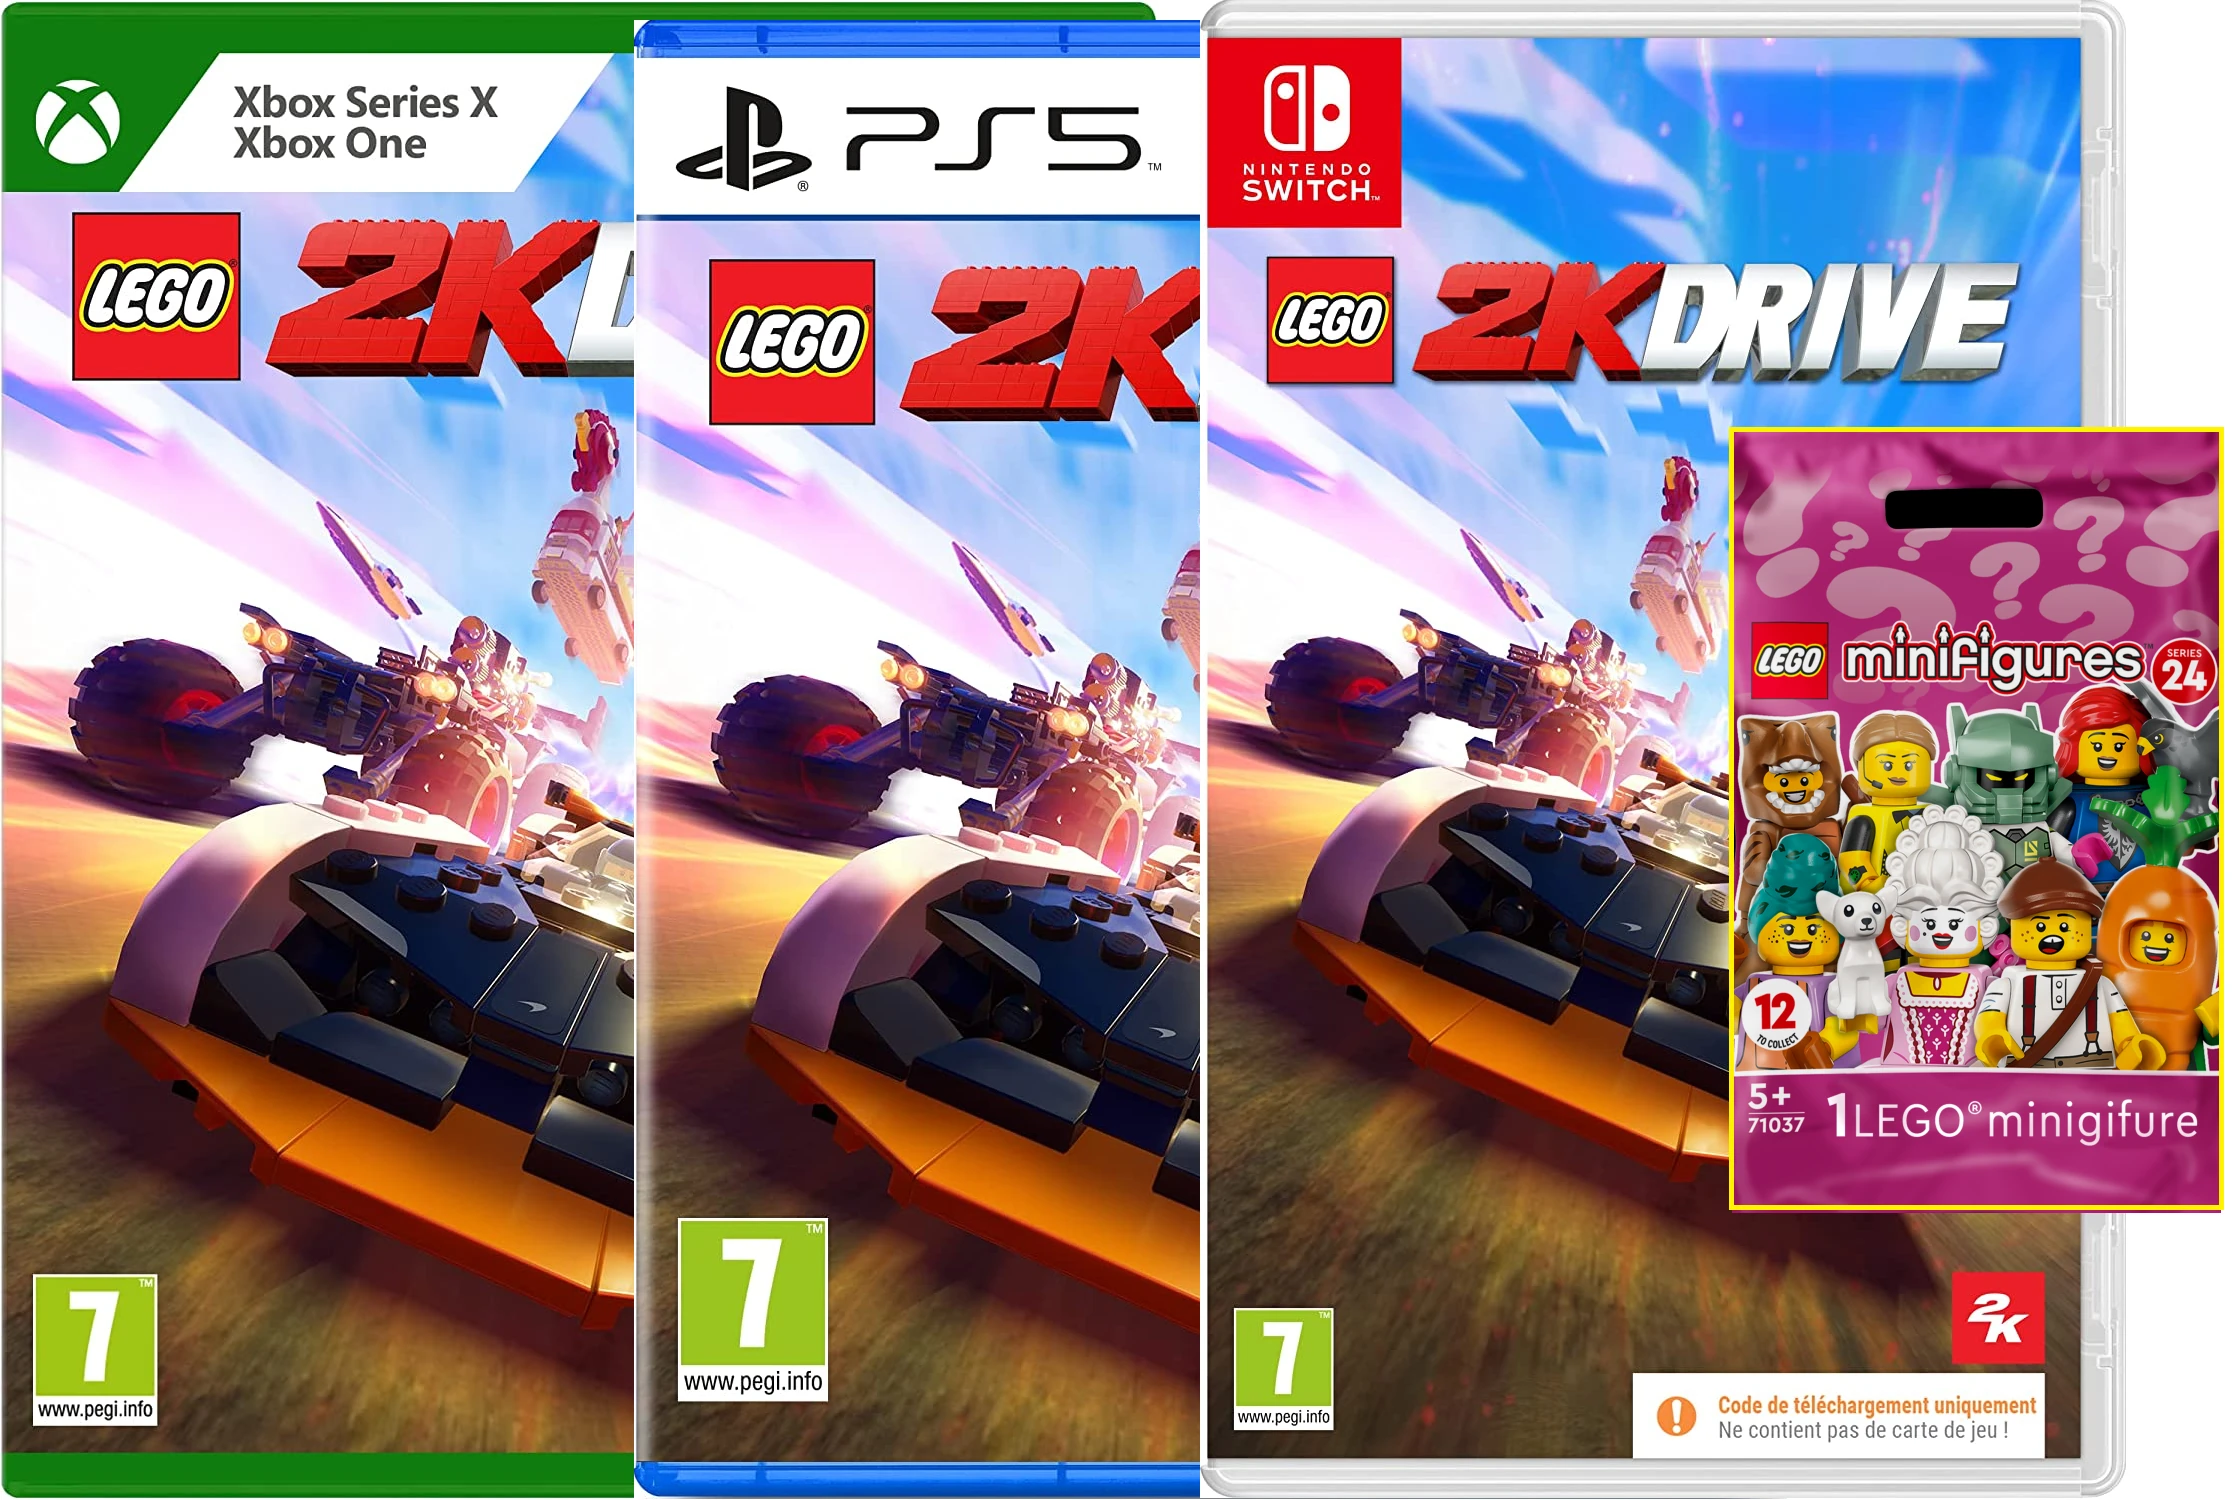 LEGO 2K Drive + Pack Surprise de Petits Personnages